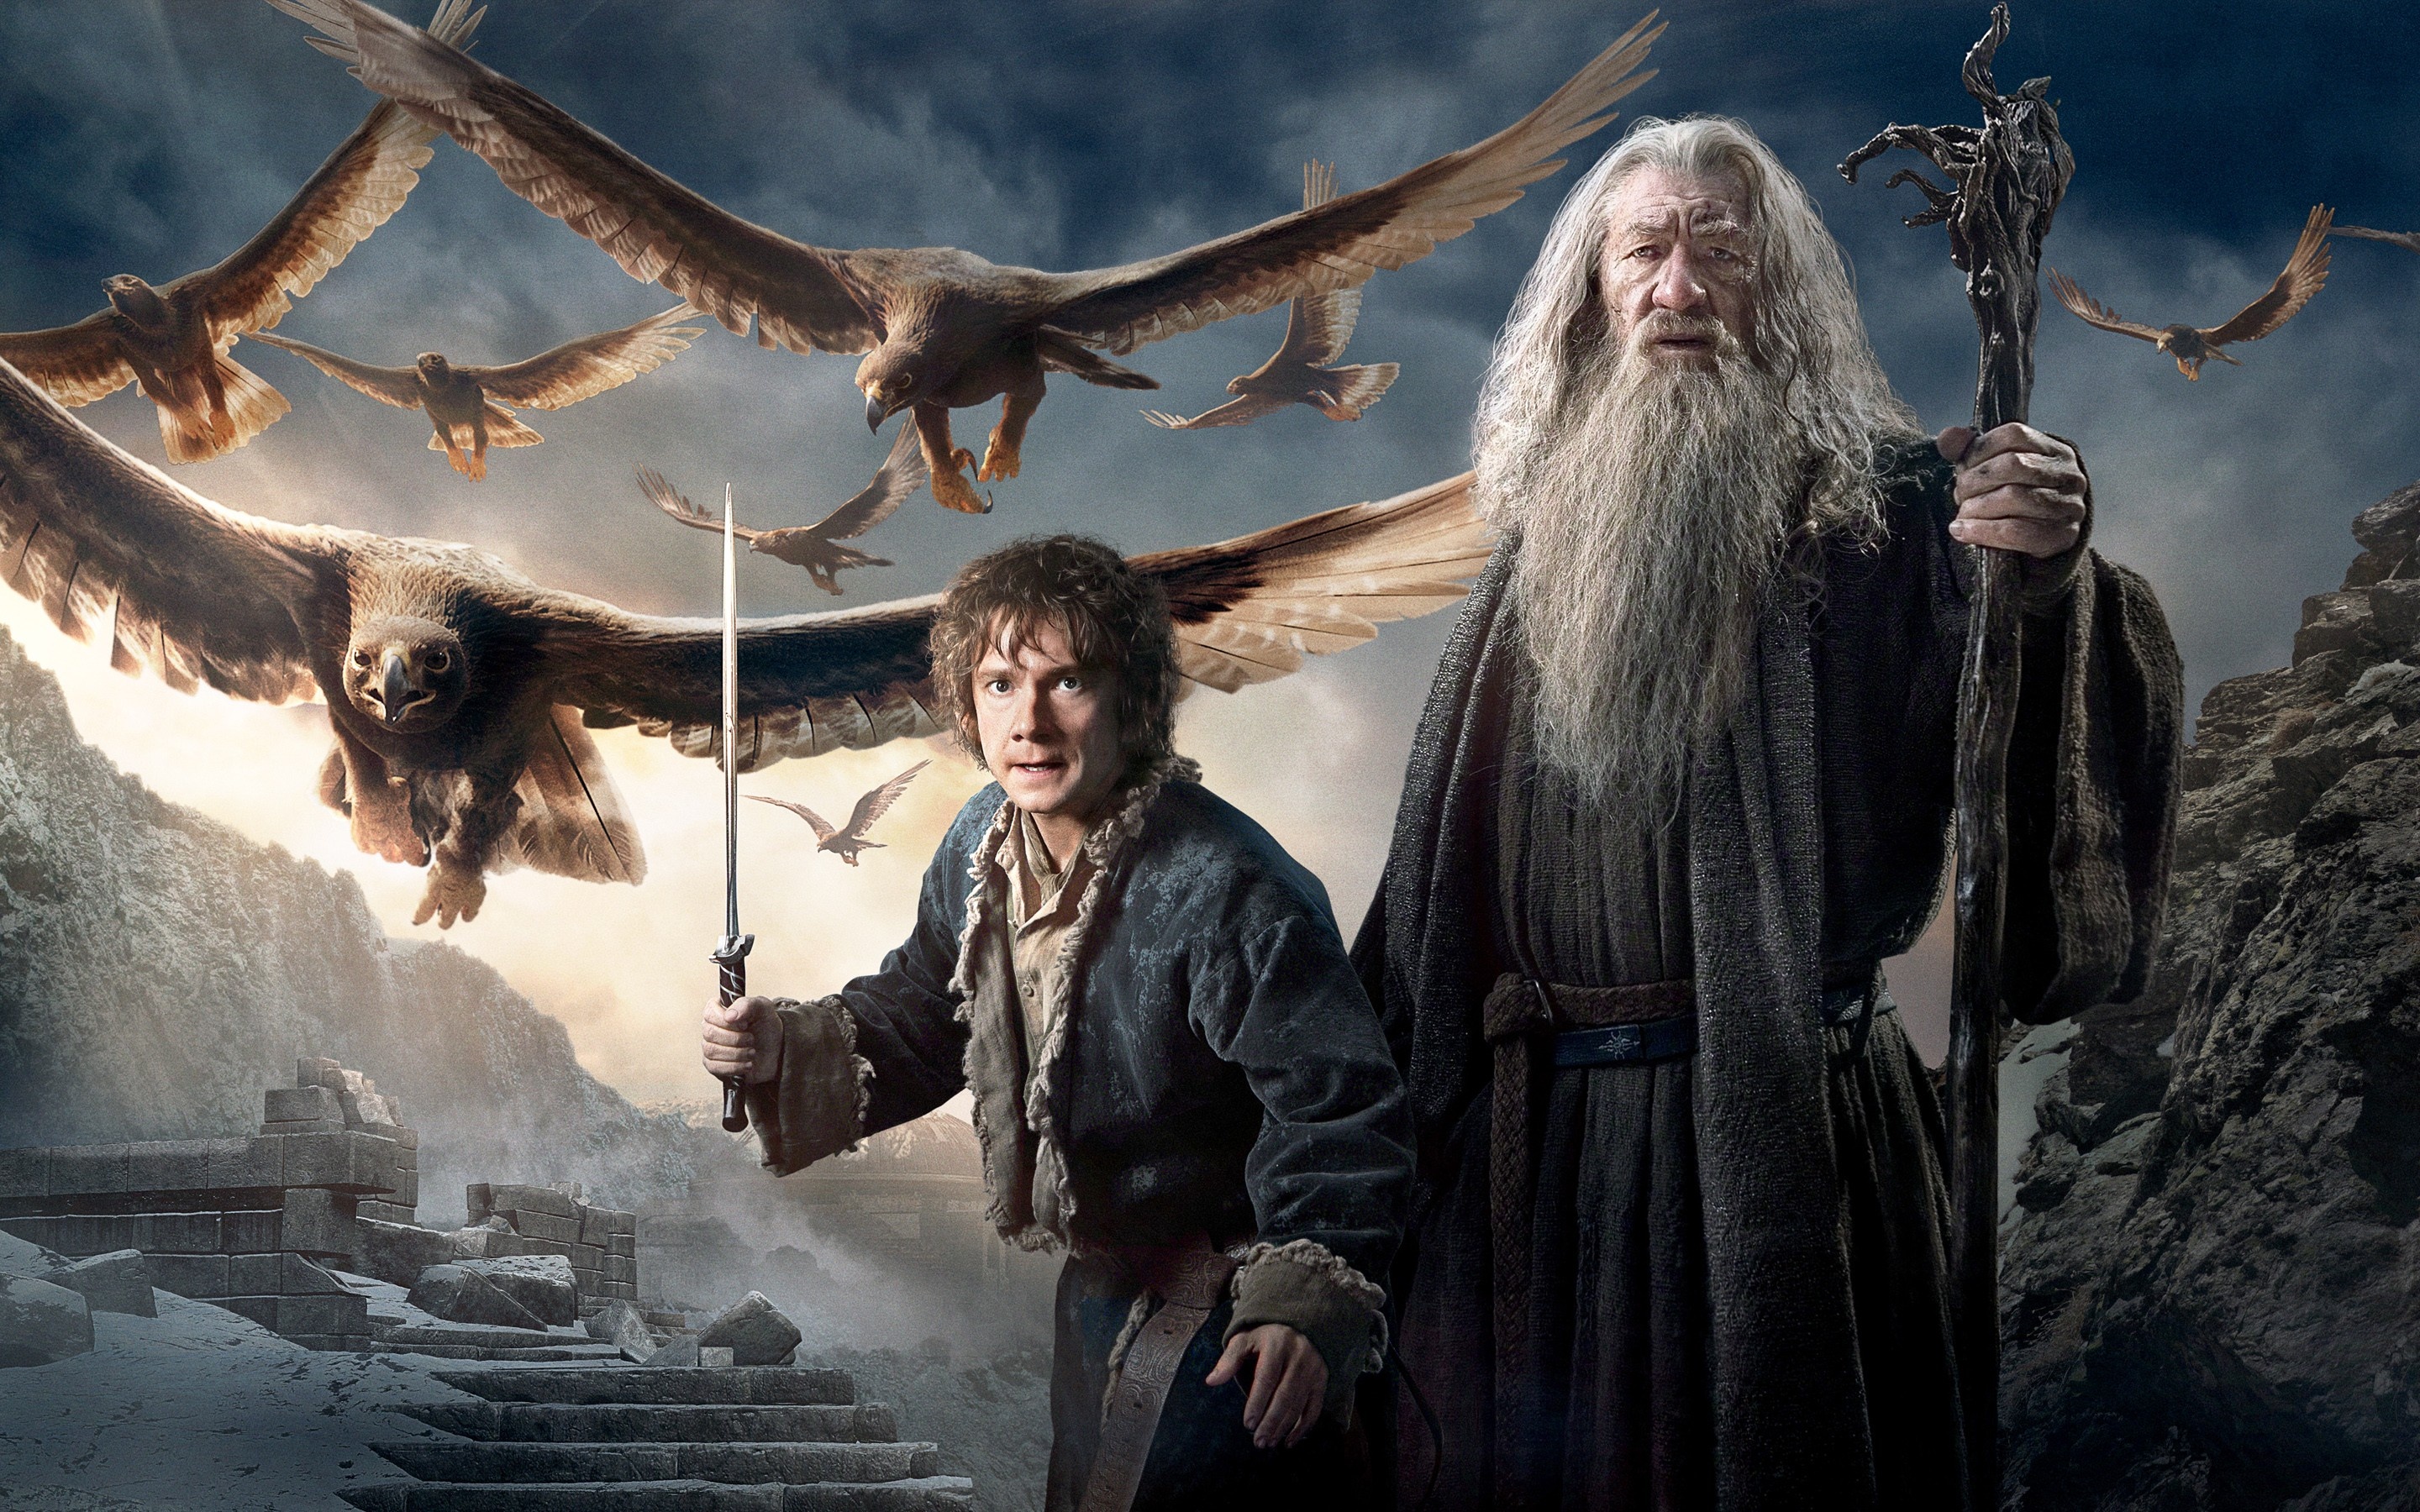 Gandalf and Bilbo, The Hobbit trilogy, High-resolution wallpaper, Stunning artwork, 2880x1800 HD Desktop